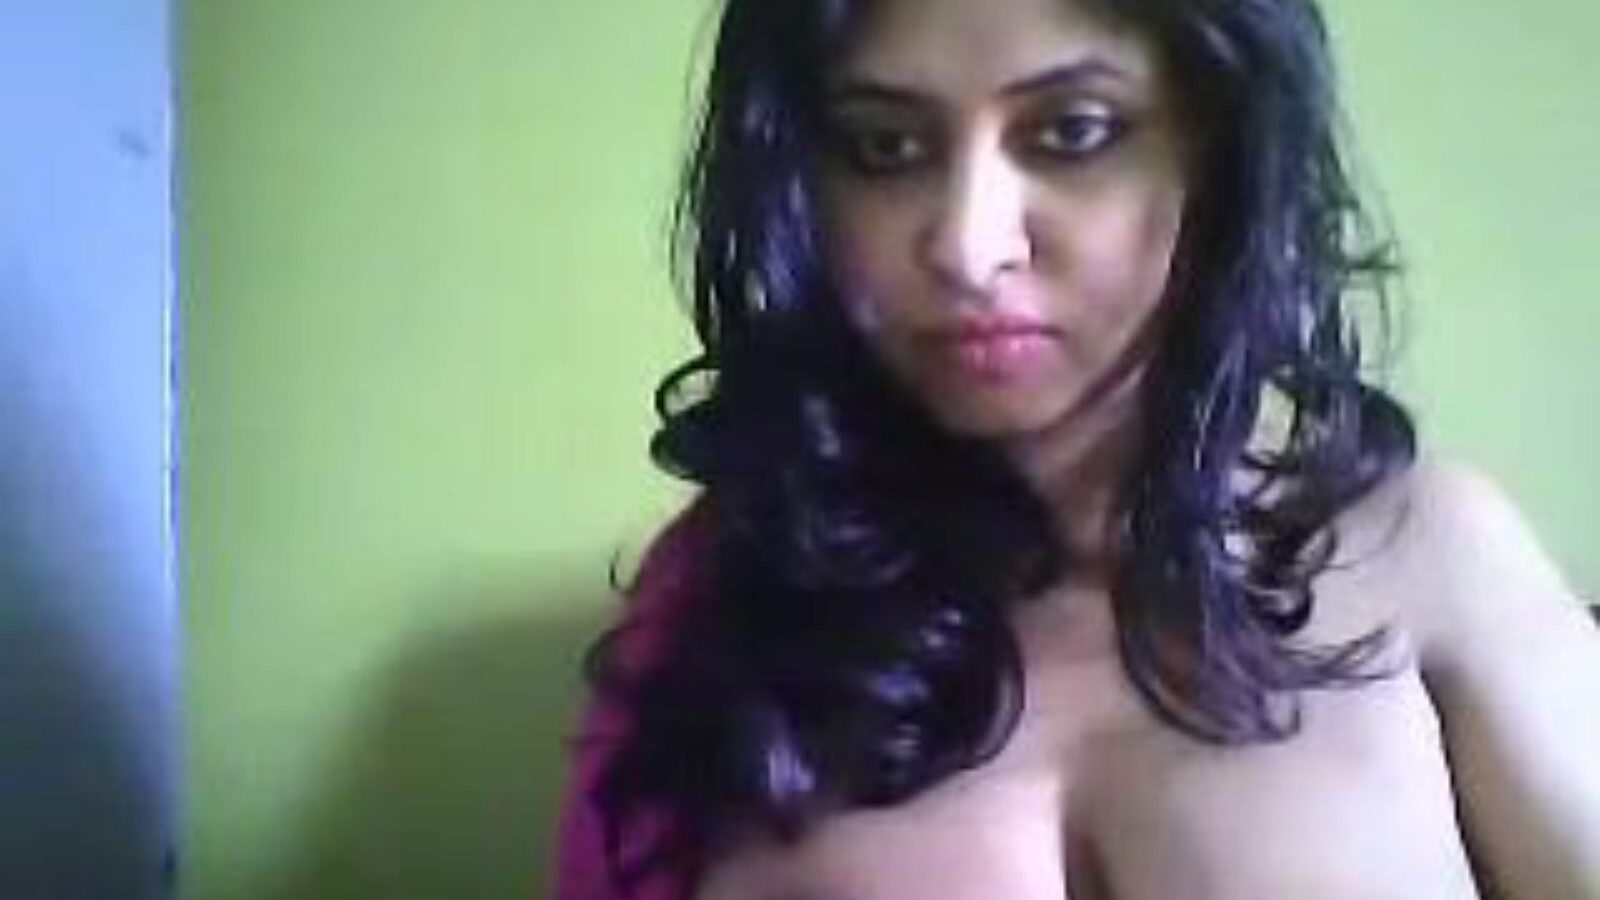 desi hot cam milf deepa, porno indiano gratuito 27: xhamster guarda la scena del film desi hot cam milf deepa su xhamster, il sito web del tubo gigante con tonnellate di episodi porno indiani asiatici gratuiti e xxx hot